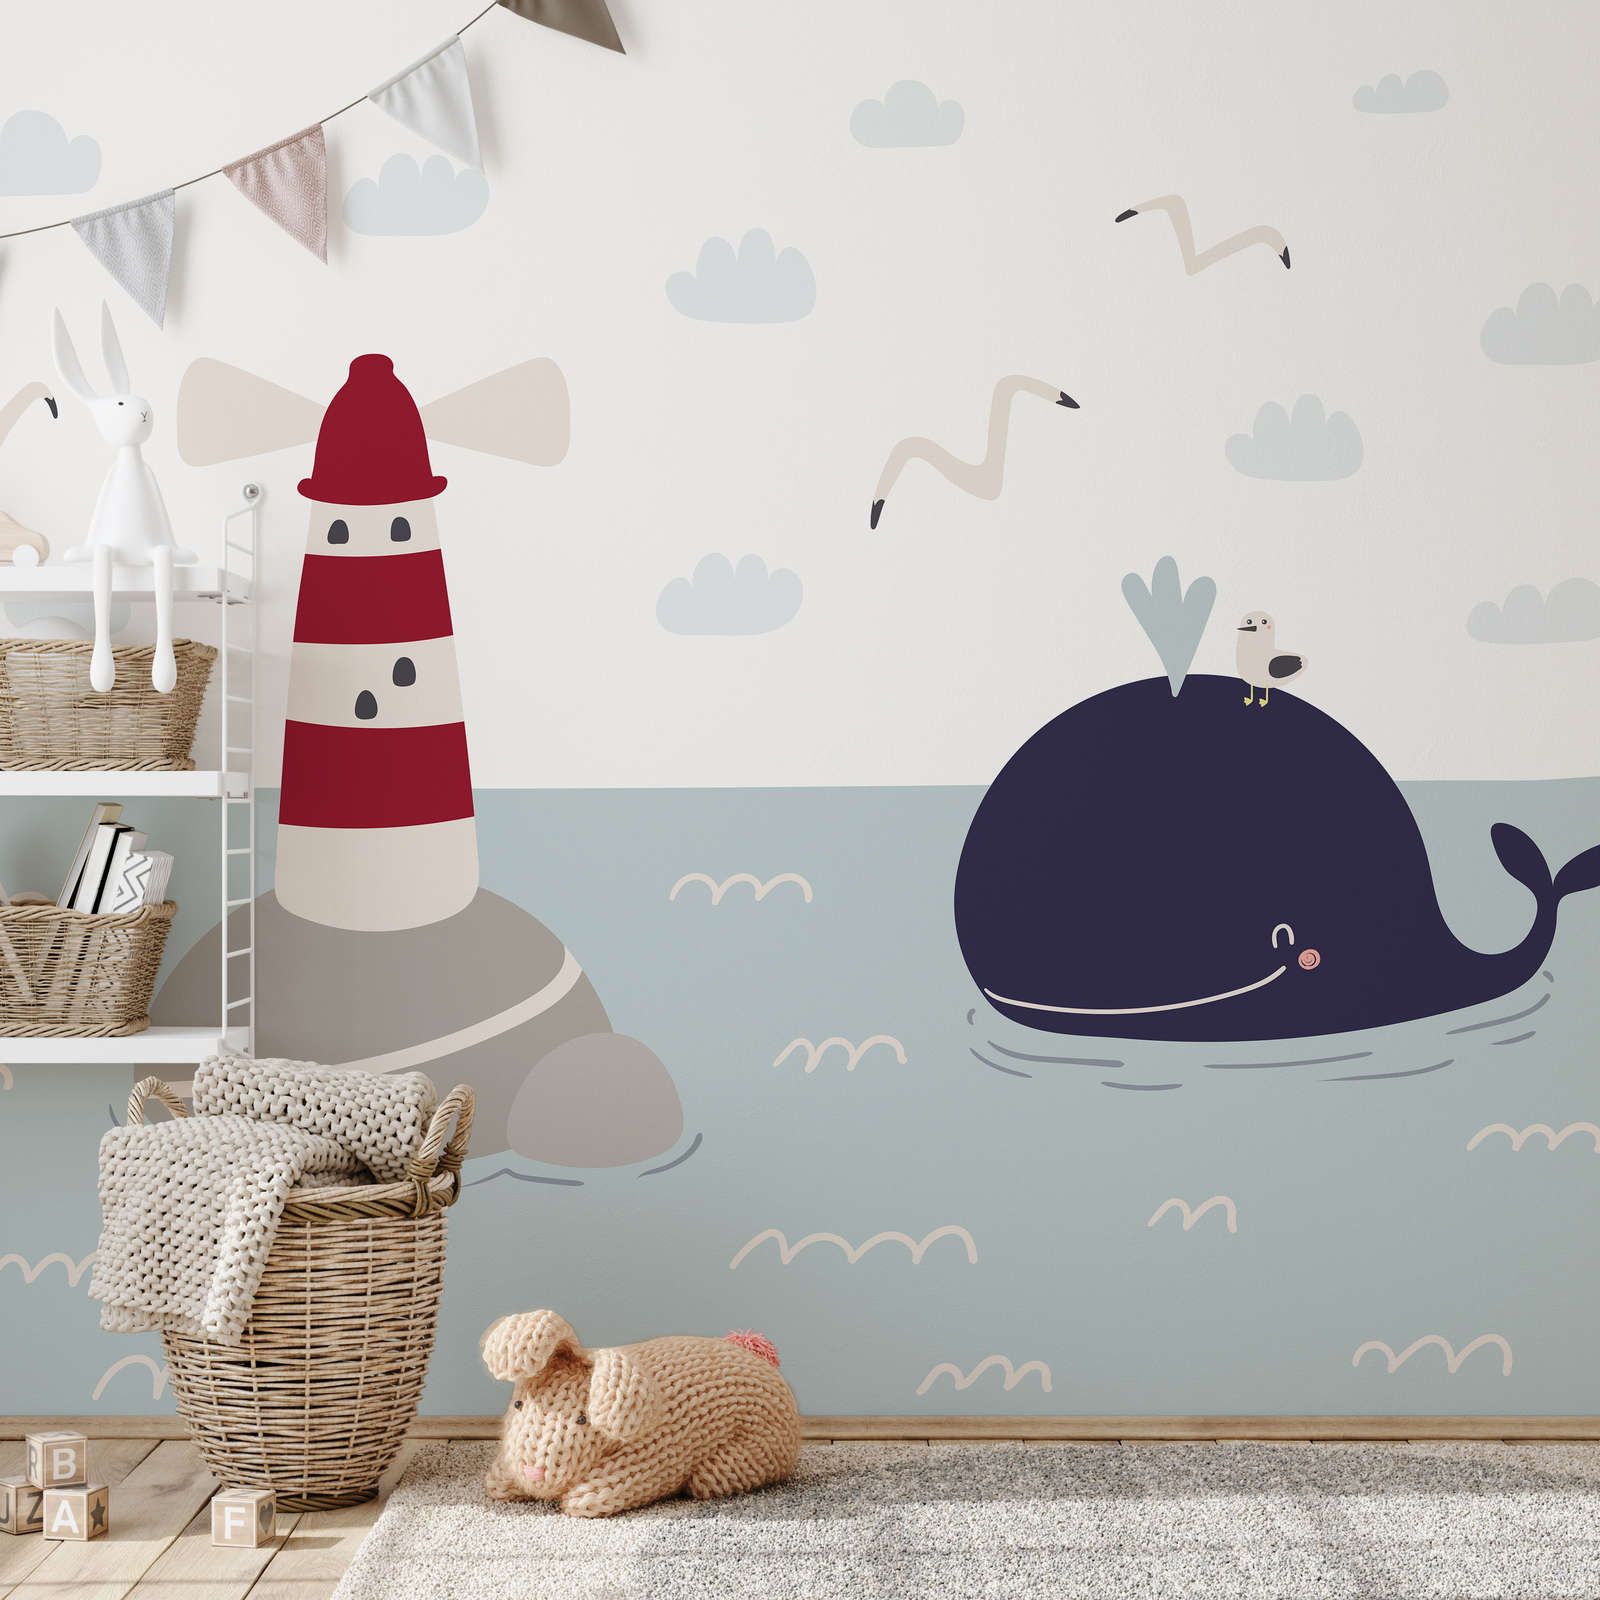             Kinderkamer muurschildering met vuurtoren en walvis - Glad & parelmoervlies
        